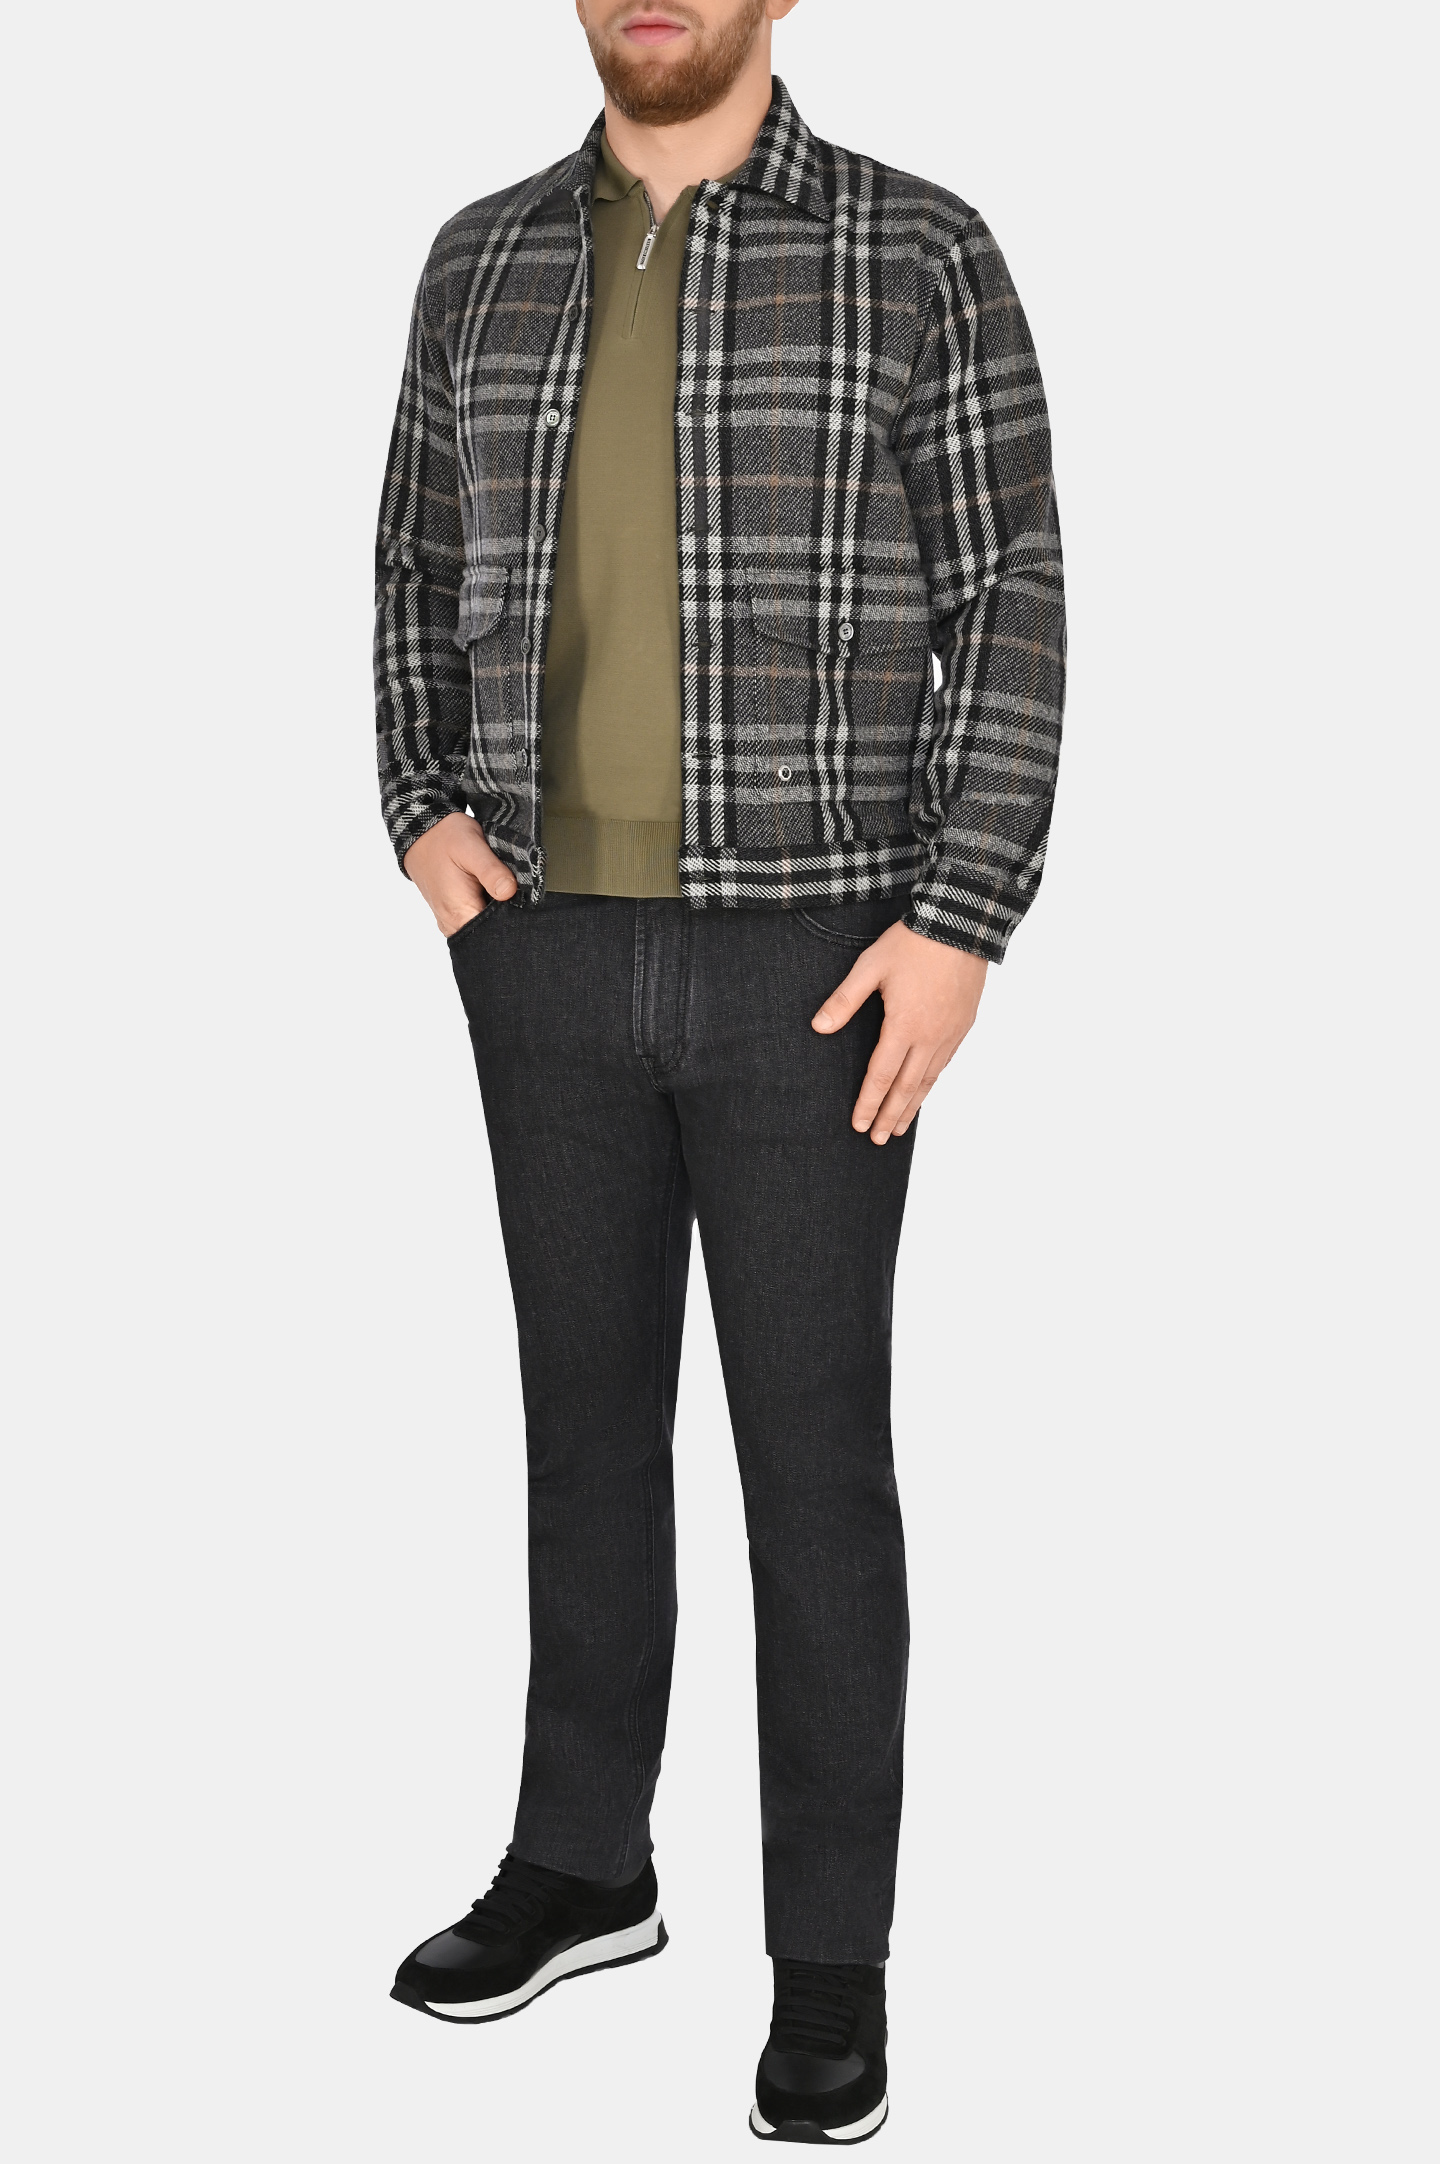 Рубашка-пиджак из шерсти и кашемира STEFANO RICCI MC007099 WC005P, цвет: Темно-серый, Мужской